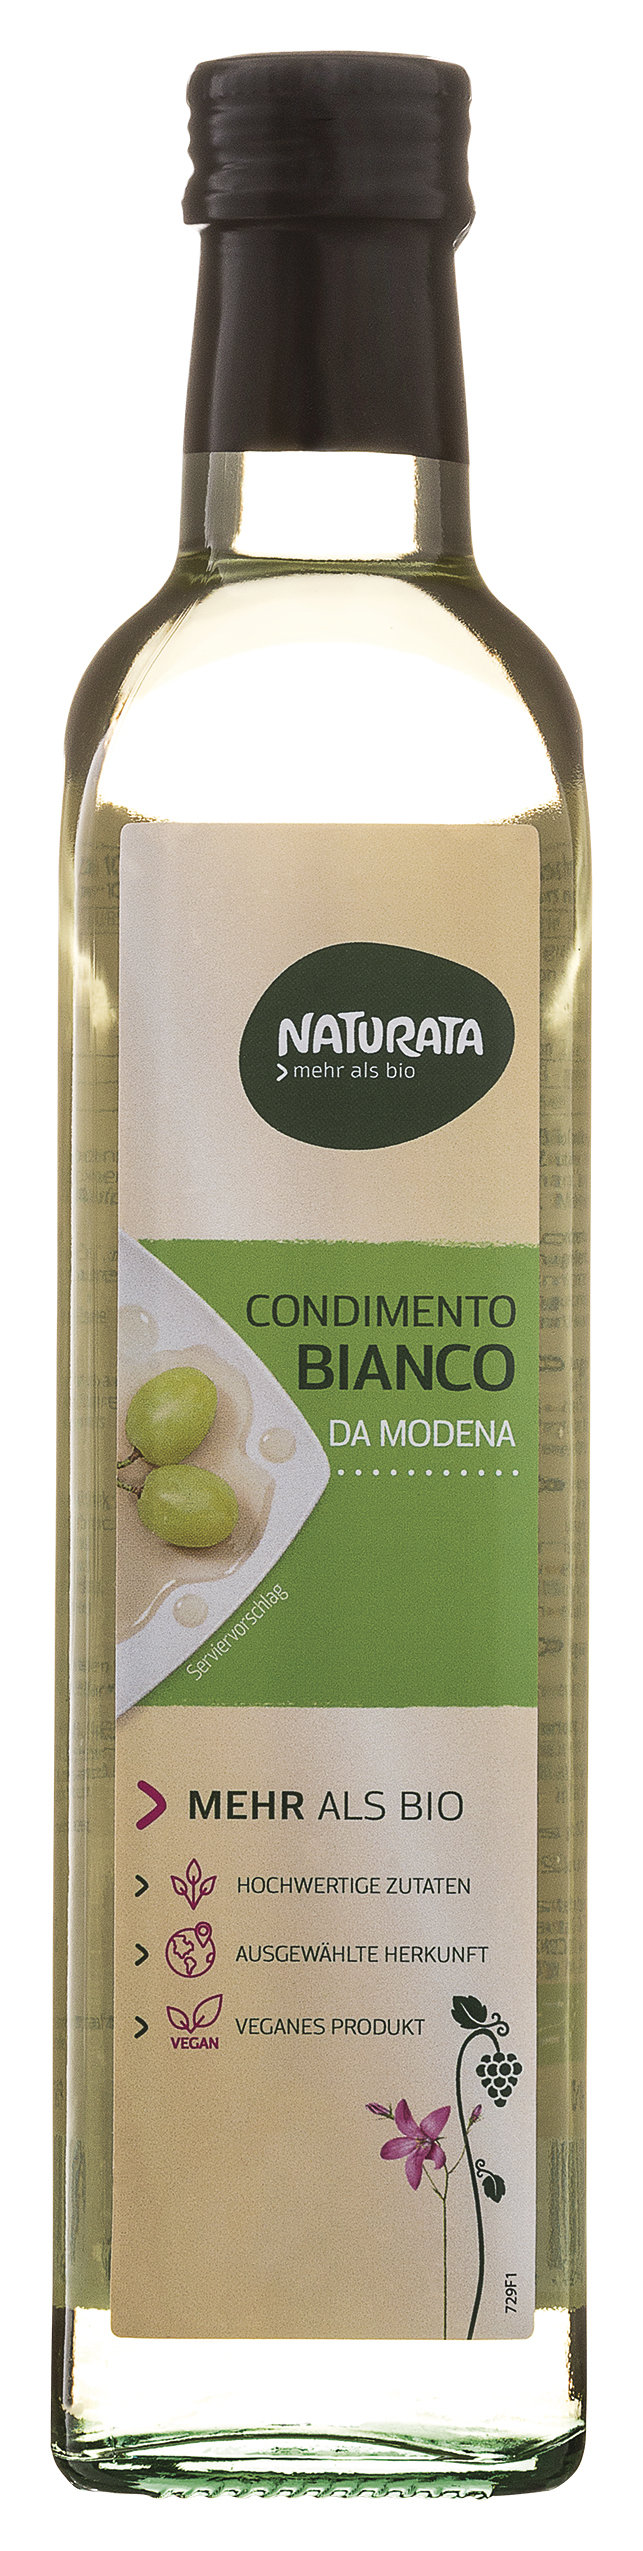 Naturata Balsamico Bianco Condimento 500 ml